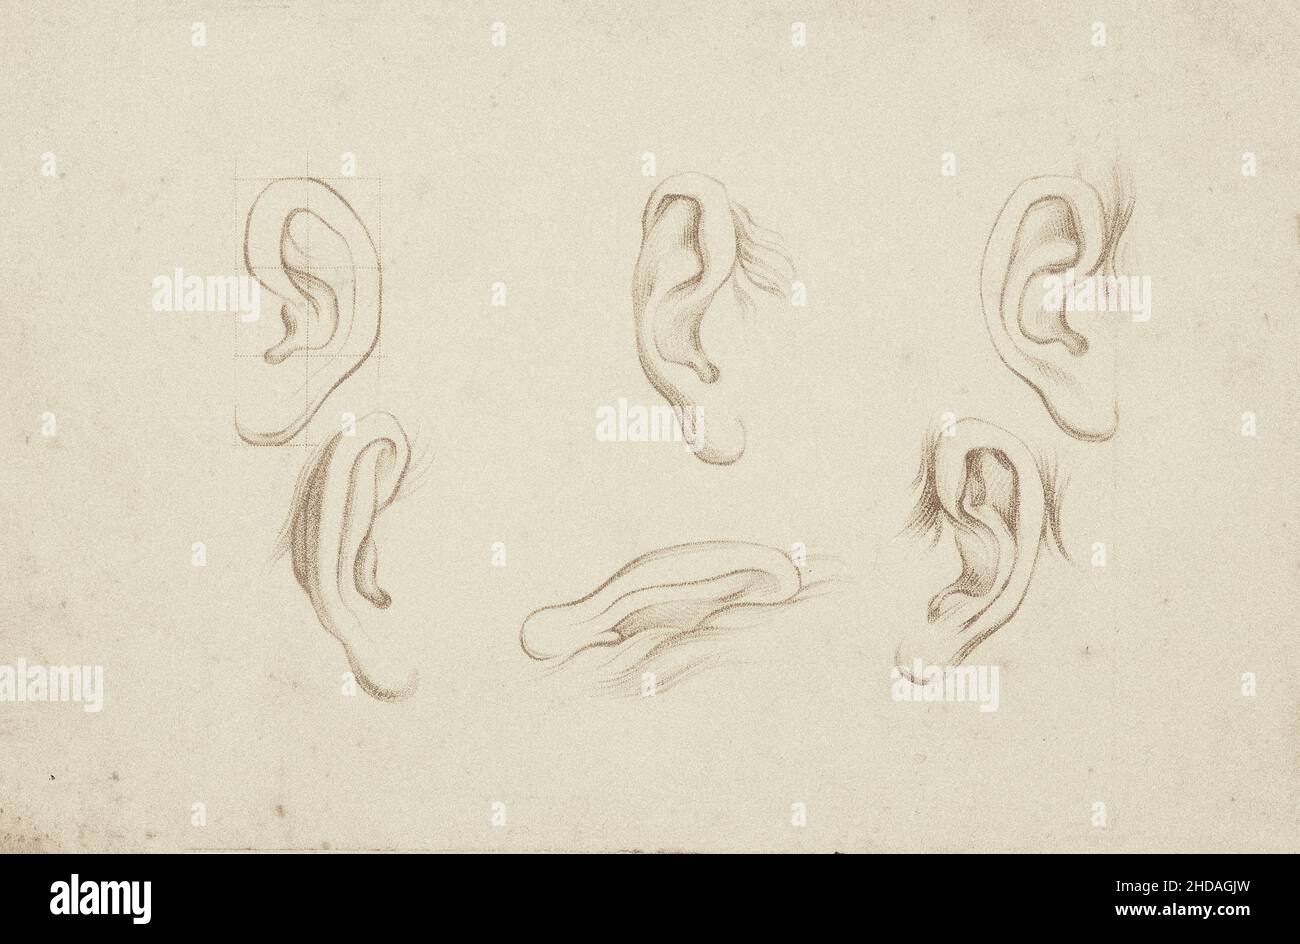 Le style de crayon du 17th siècle imprime : des études pour les oreilles. Banque D'Images